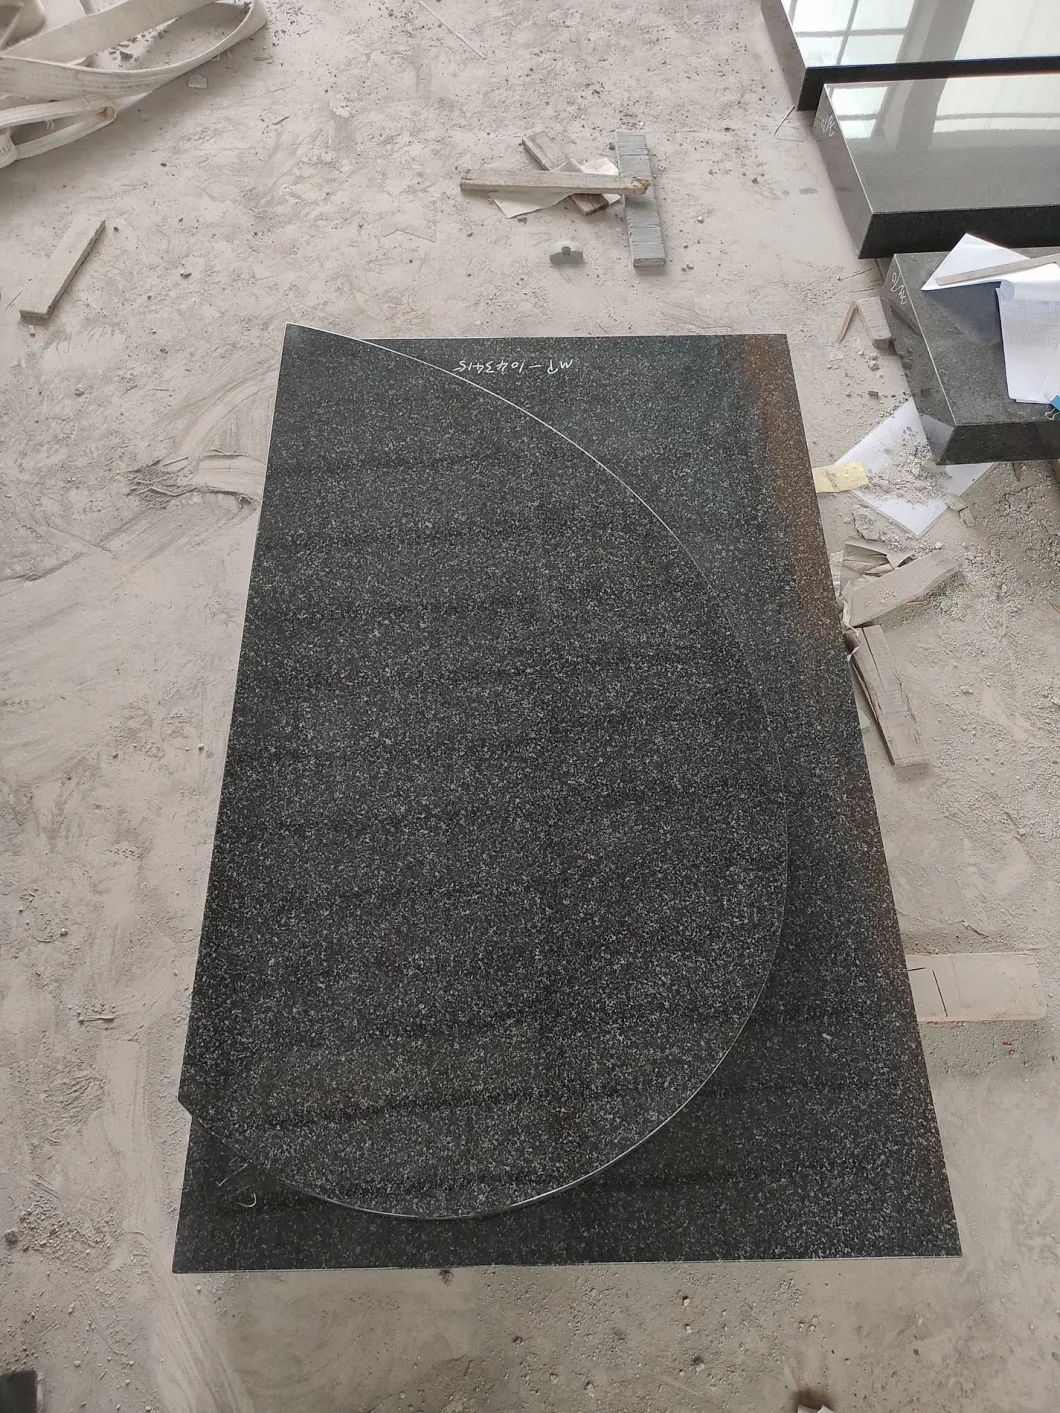 Fashion Oxford Regal Granite Cemetery Headstones Semicircle Design USA Tombstone